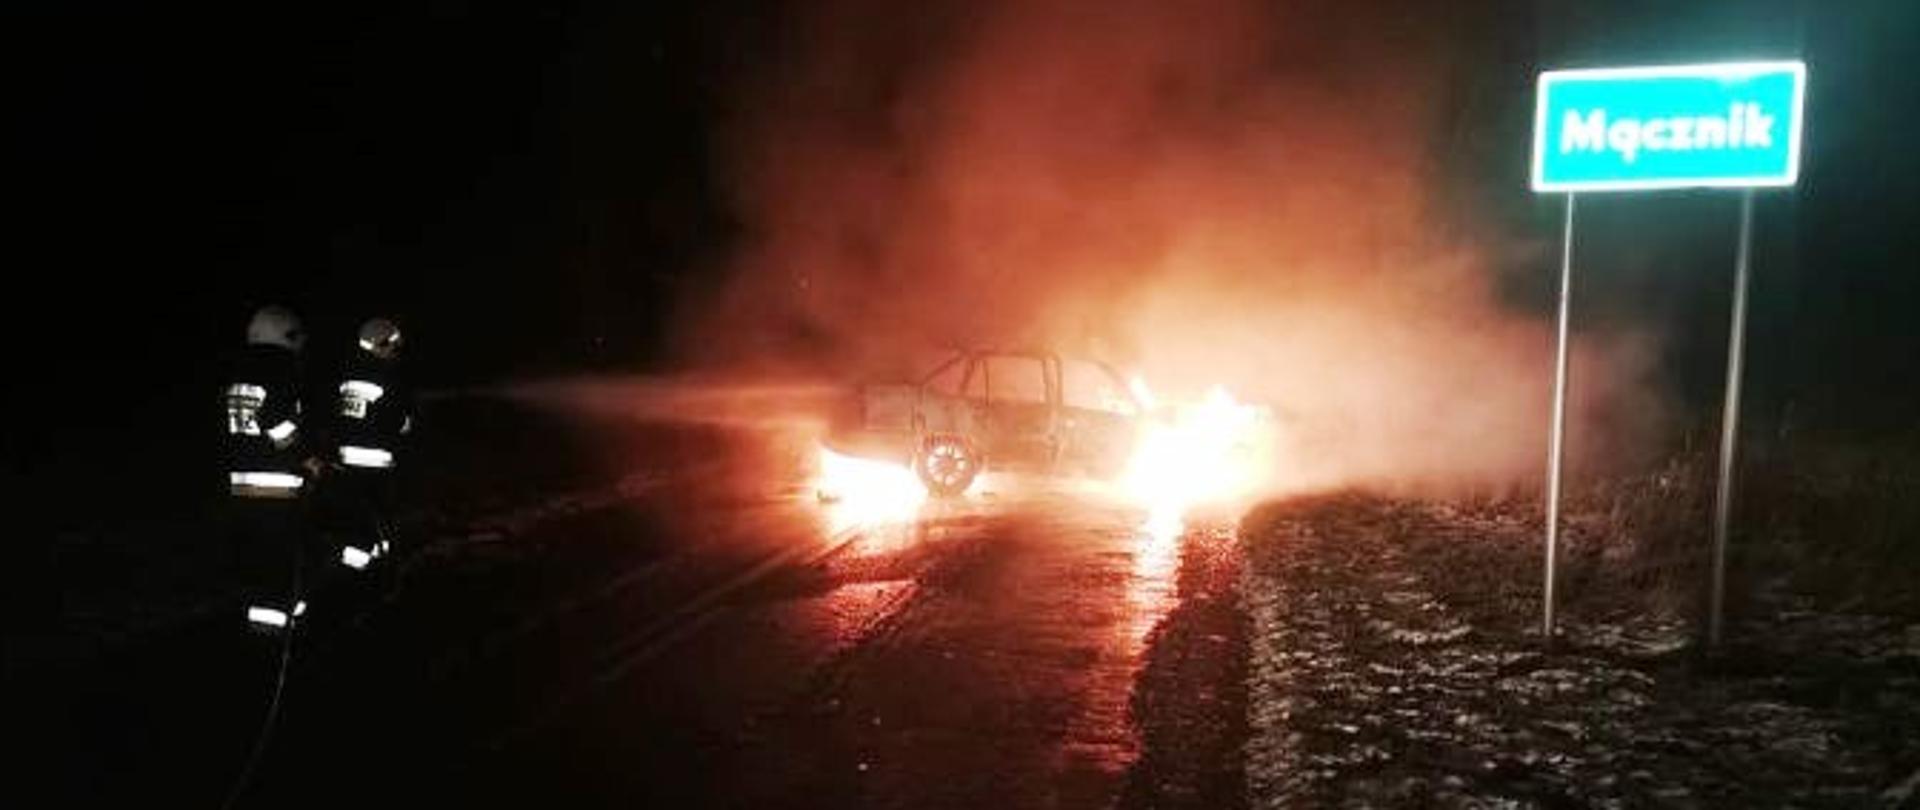 Samochód osobowy na jezdni objęty płomieniami. Dwóch strażaków trzymających wąż gaśniczy próbujących ugasić pożar pianą. Na poboczu widoczny znak drogowy z napisem Mącznik.